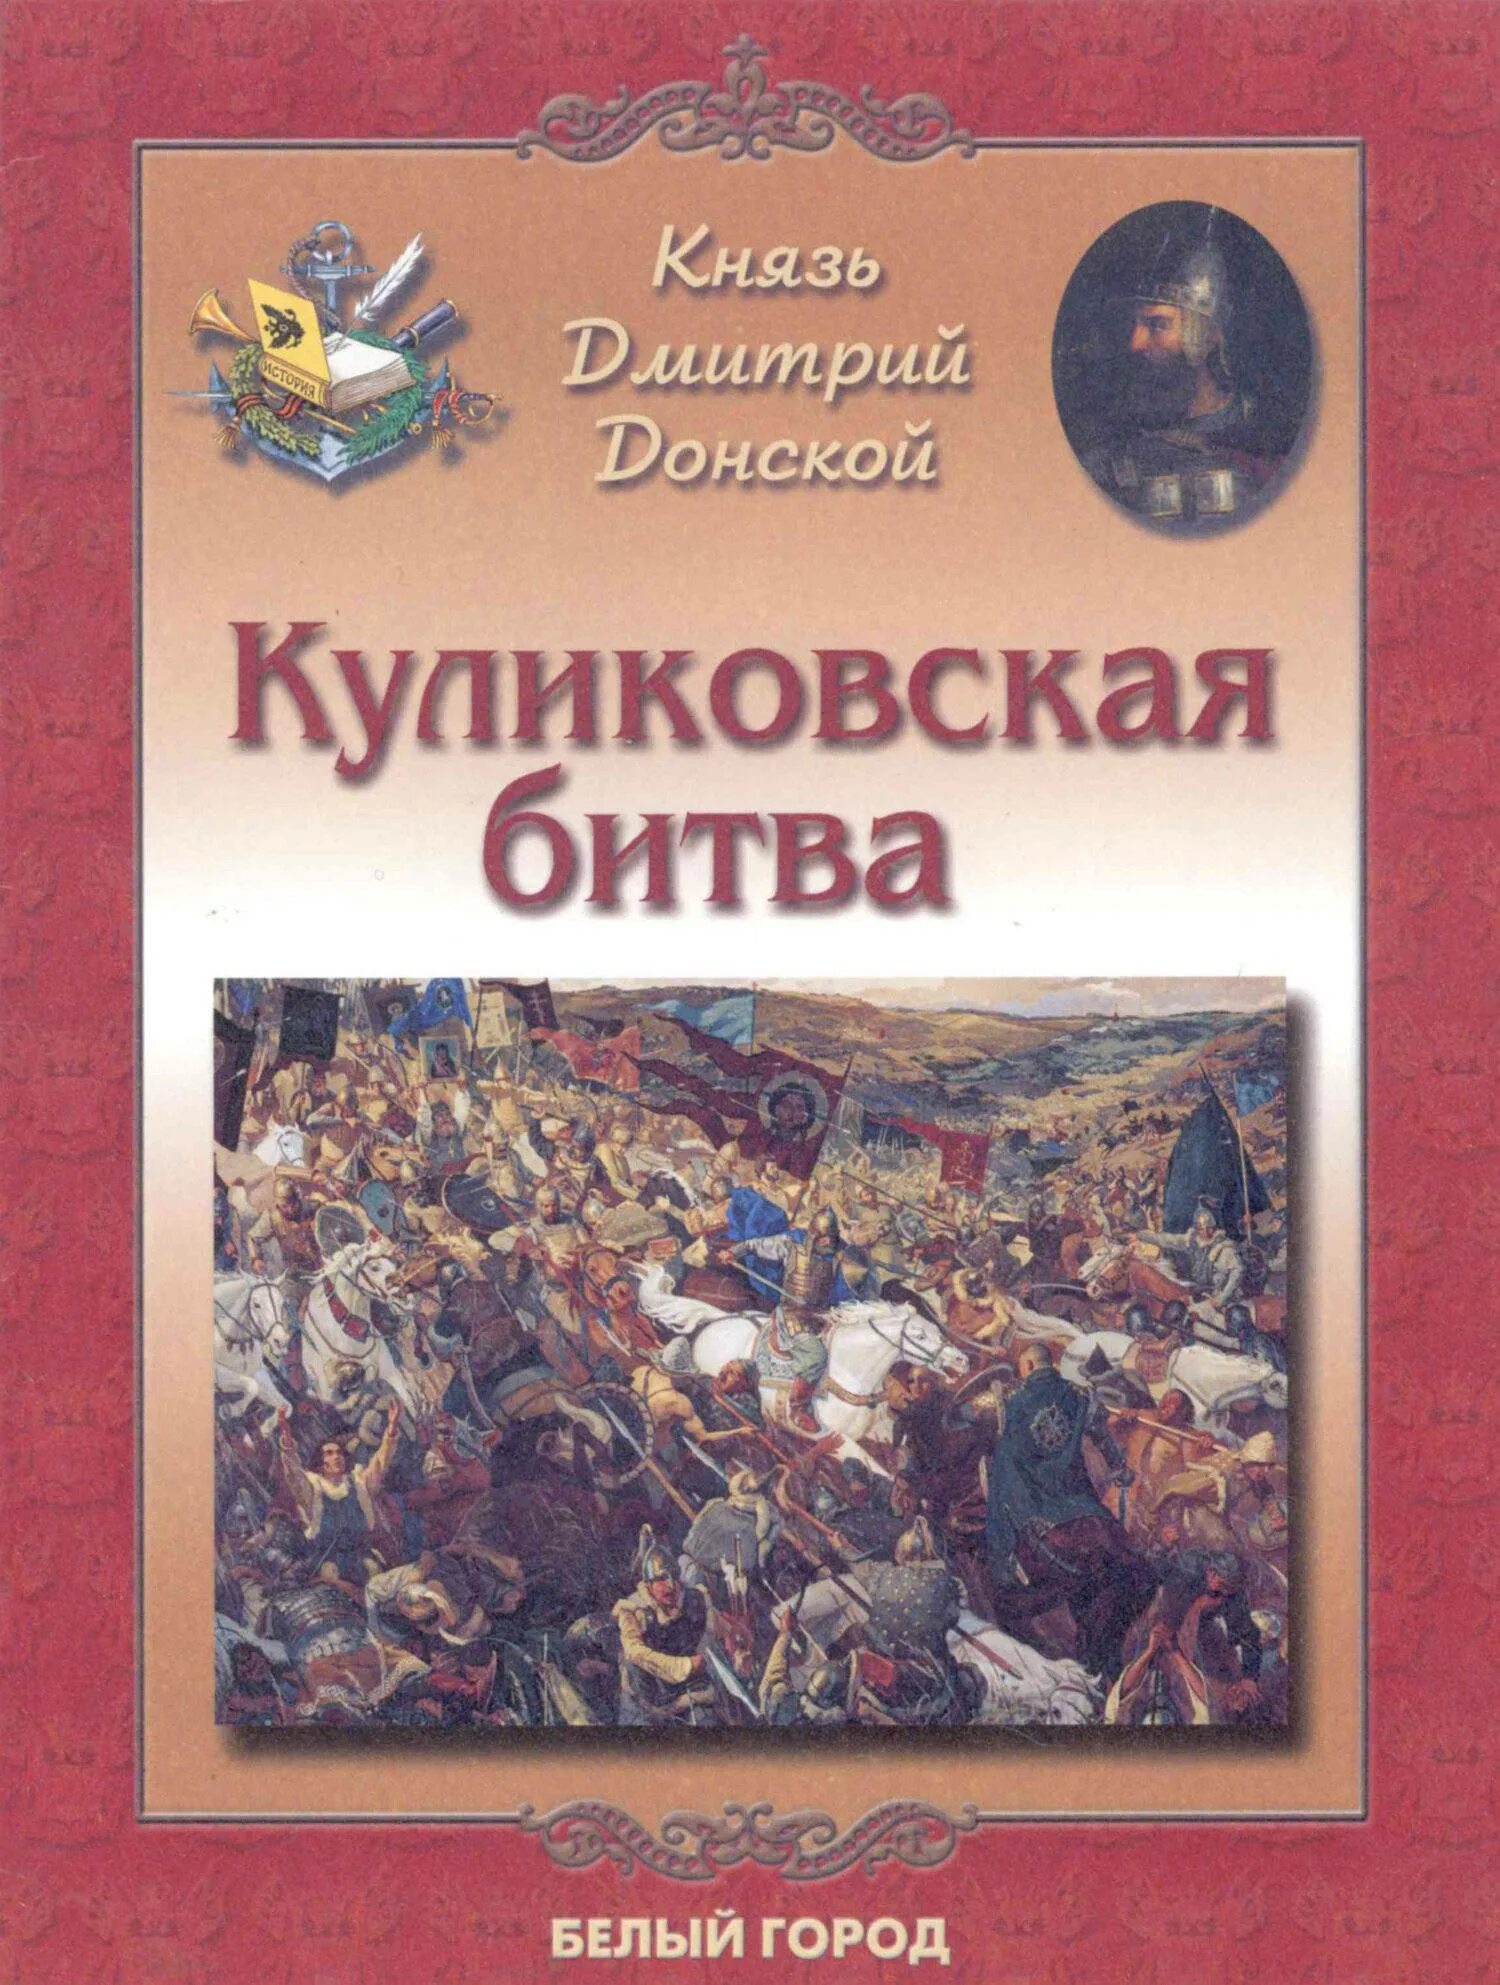 Книги о Куликовской битве для детей.